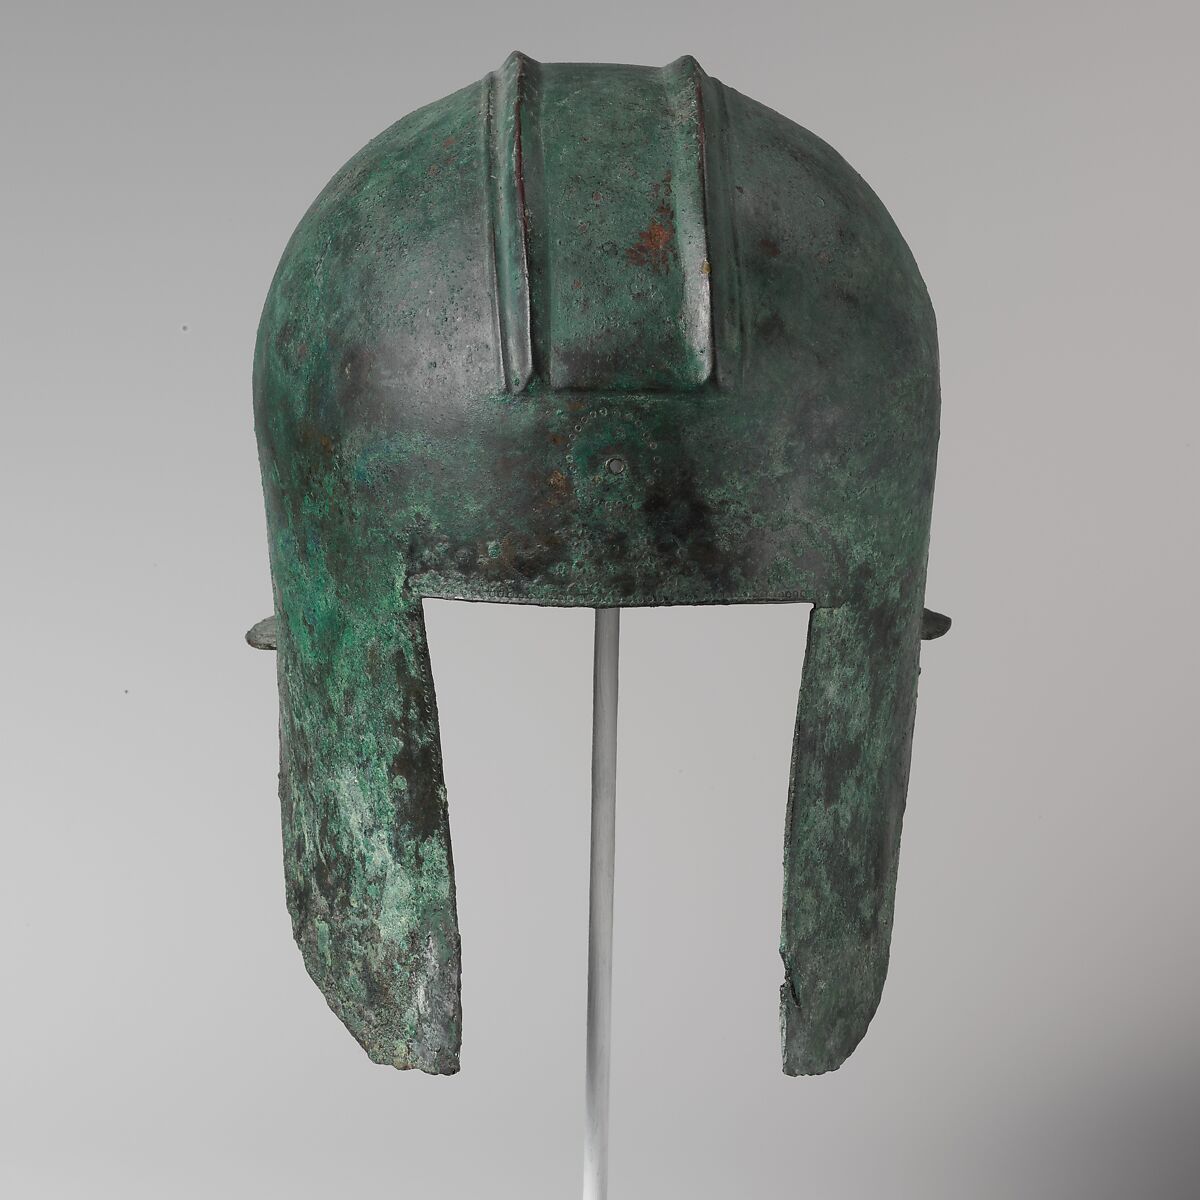 Bronze helmet of Illyrian type, bronze, Greek